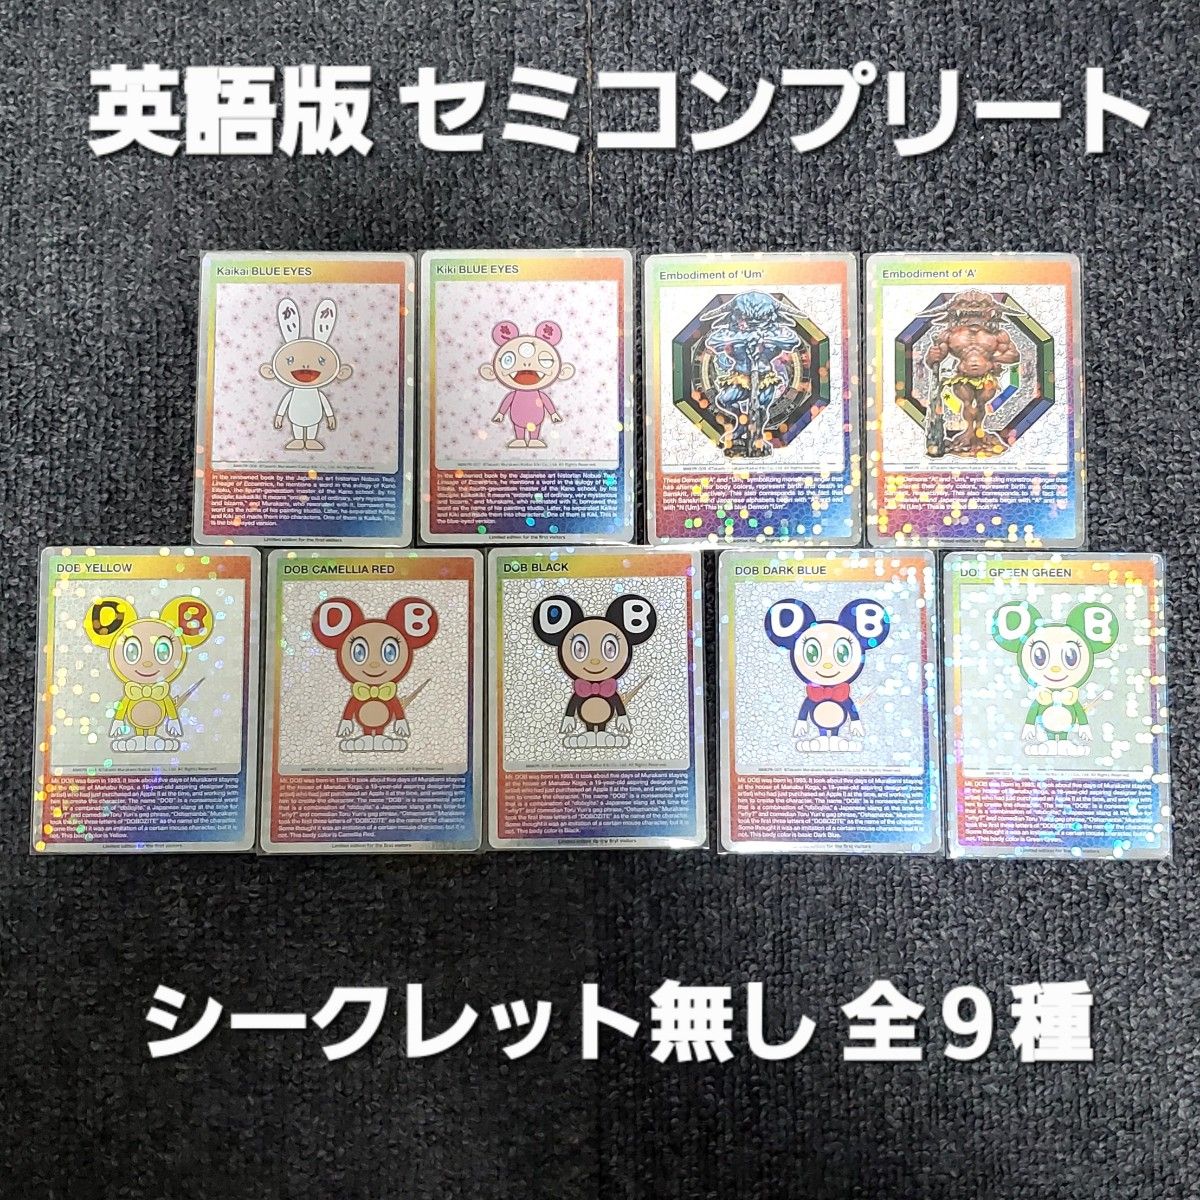 村上隆 トレーディングカード セミコンプリート 英語語版 全9種 (シークレット無)